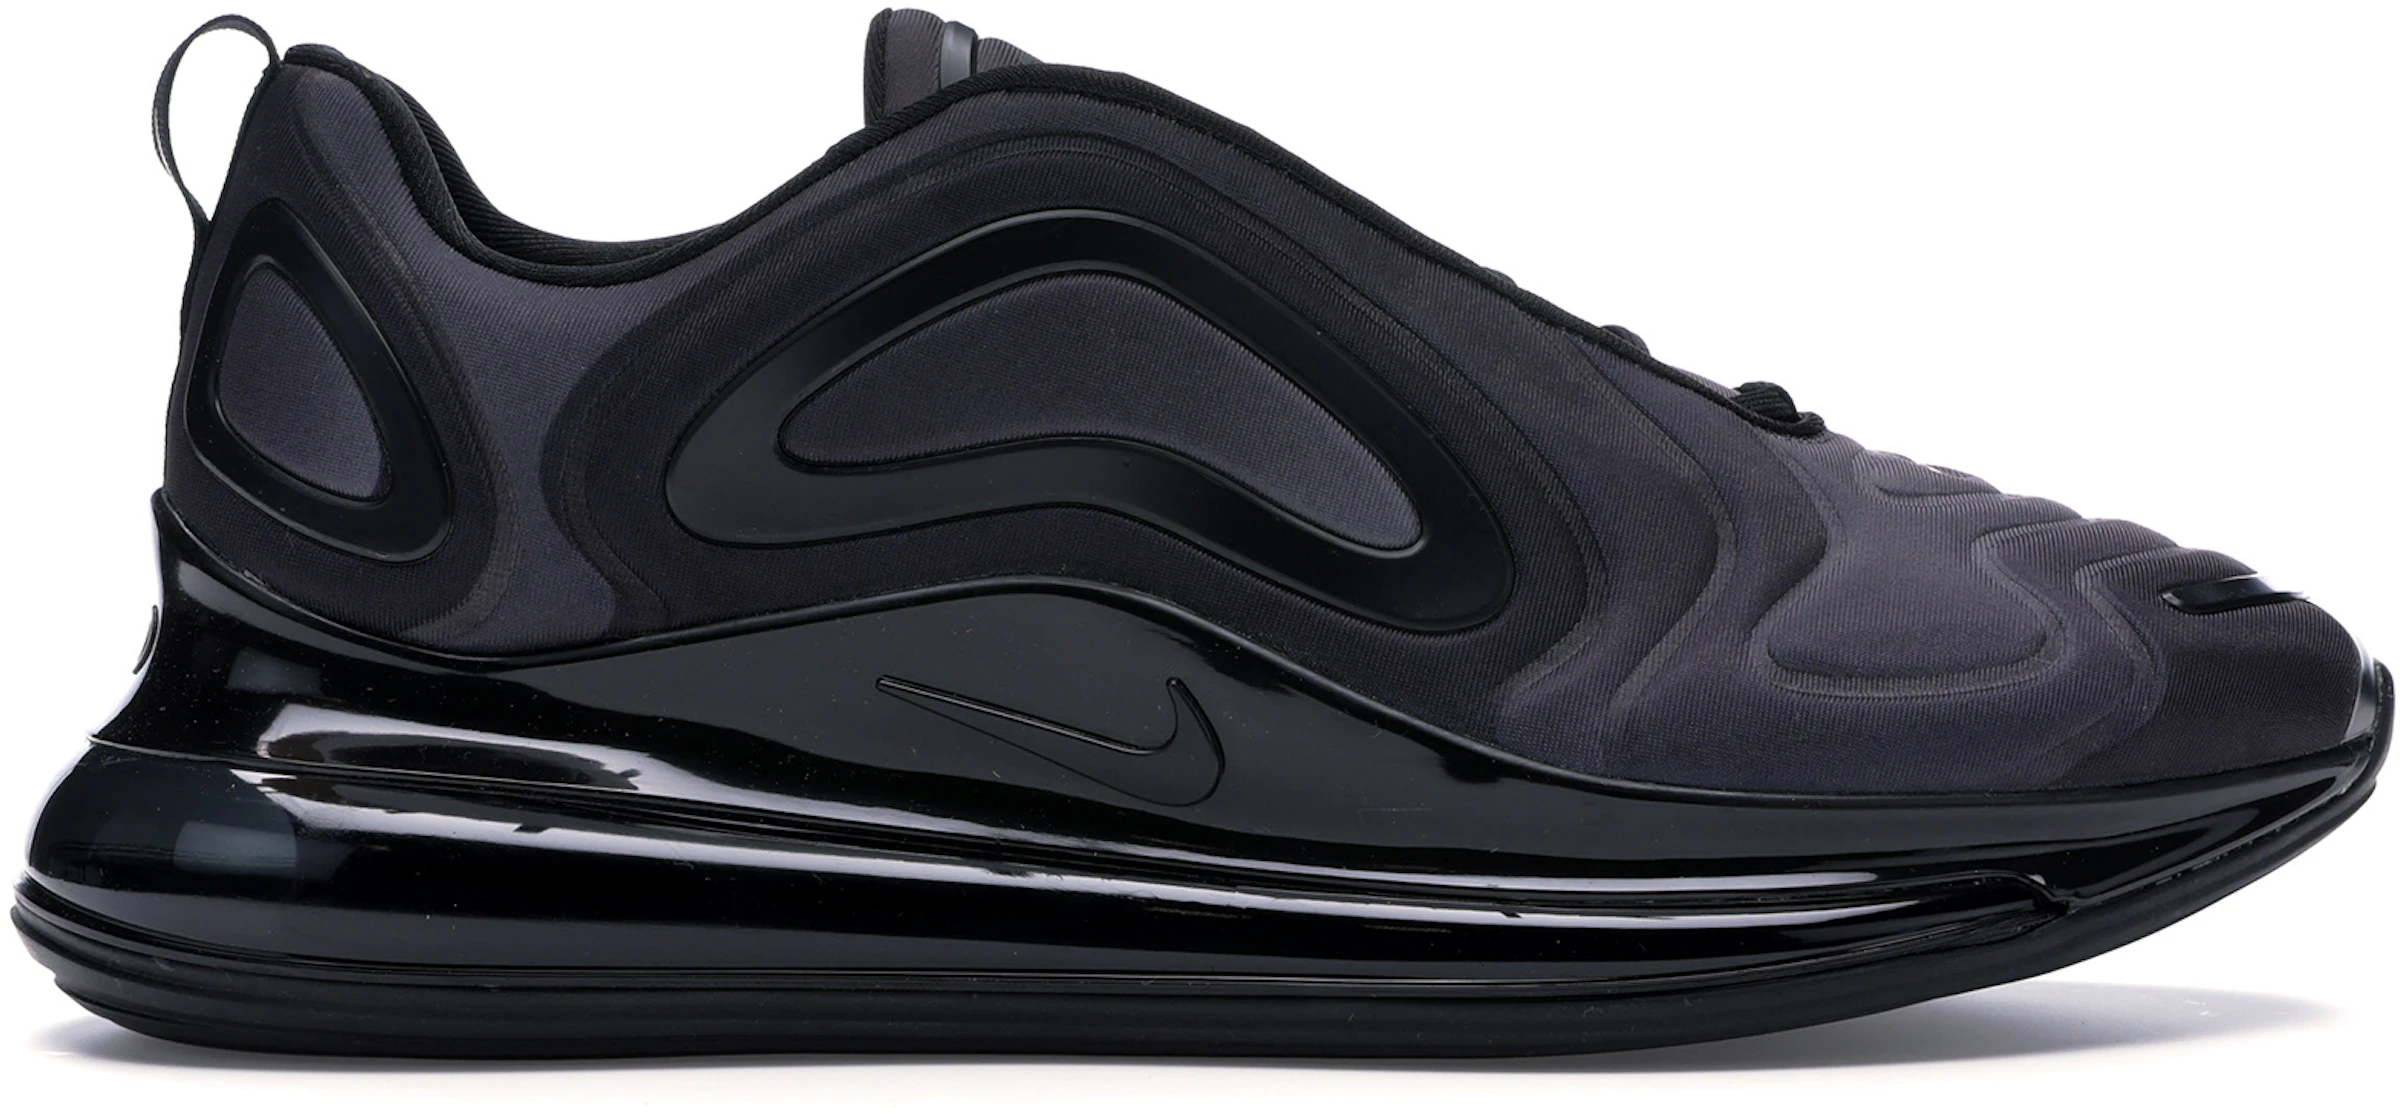 Compra Nike Air Max Calzado y sneakers nuevos - StockX